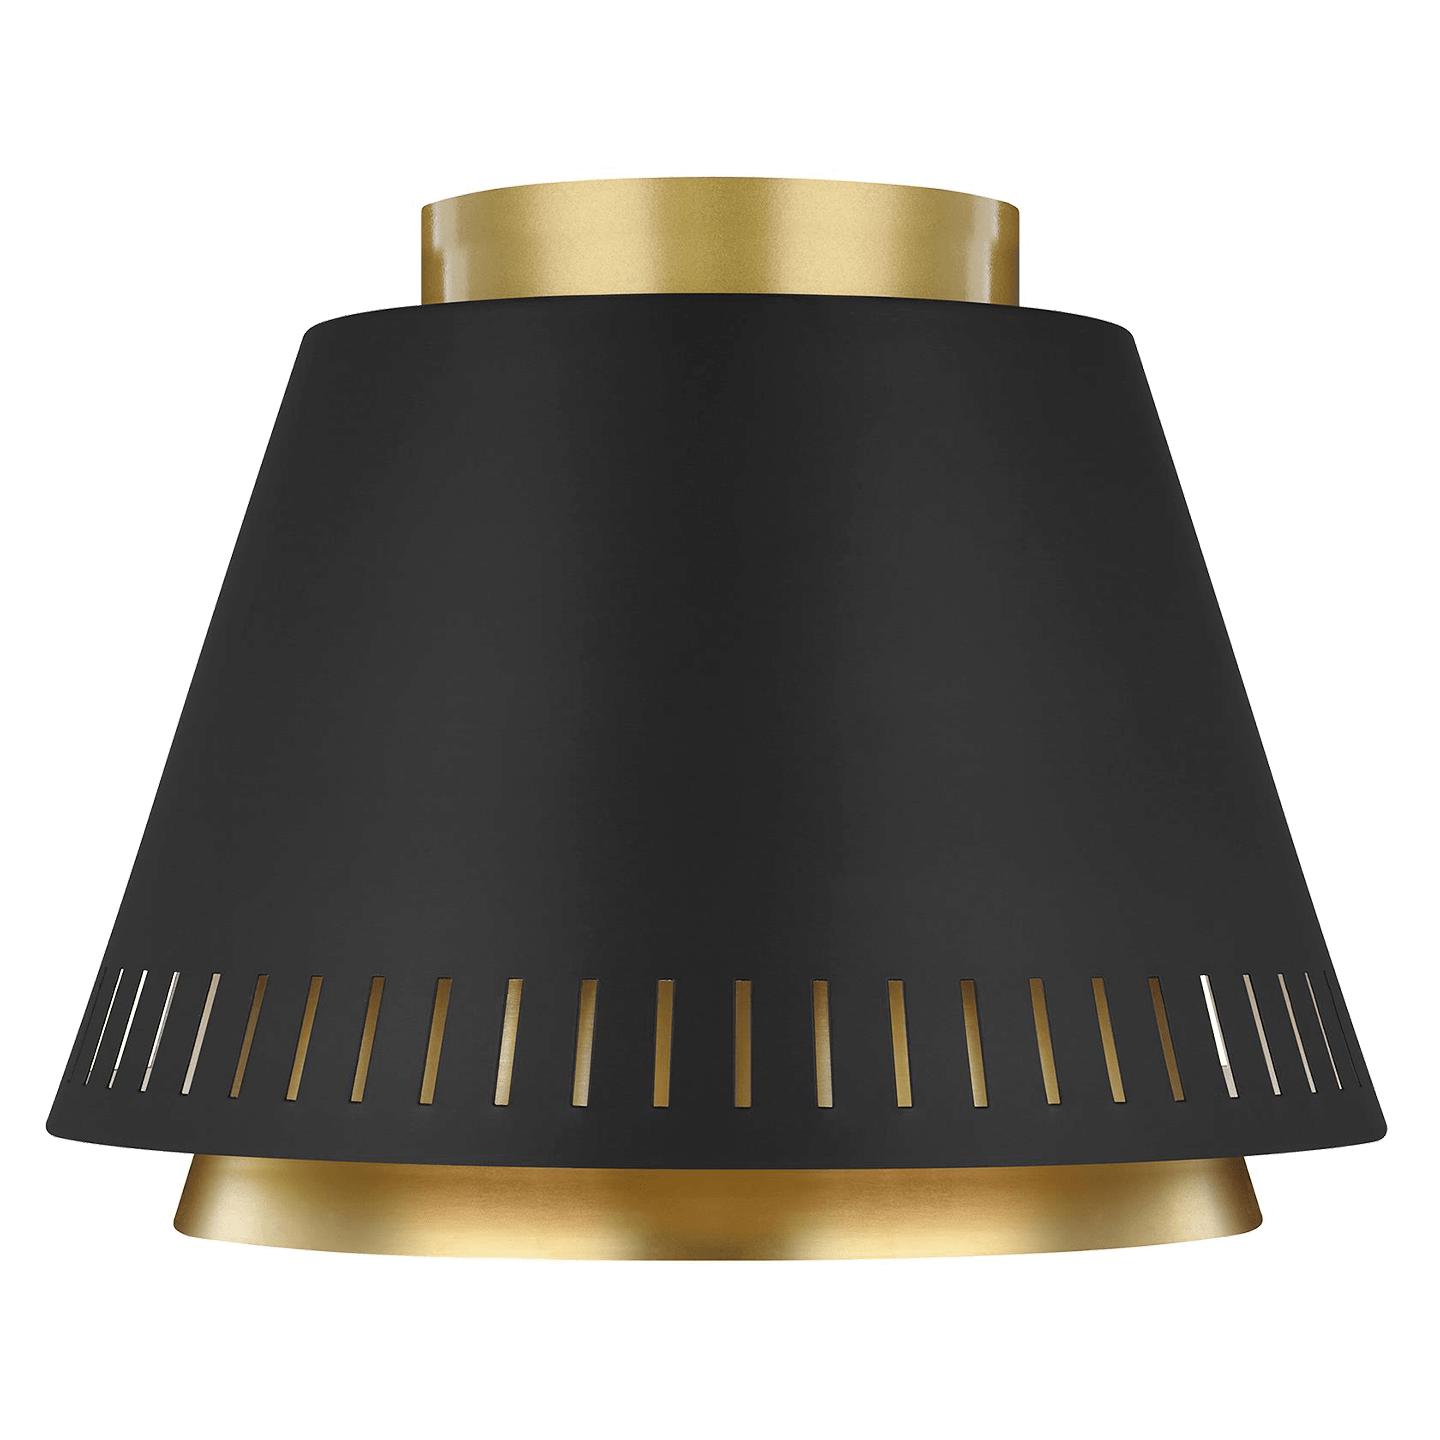 Купить Накладной светильник Carter Flush Mount в интернет-магазине roooms.ru